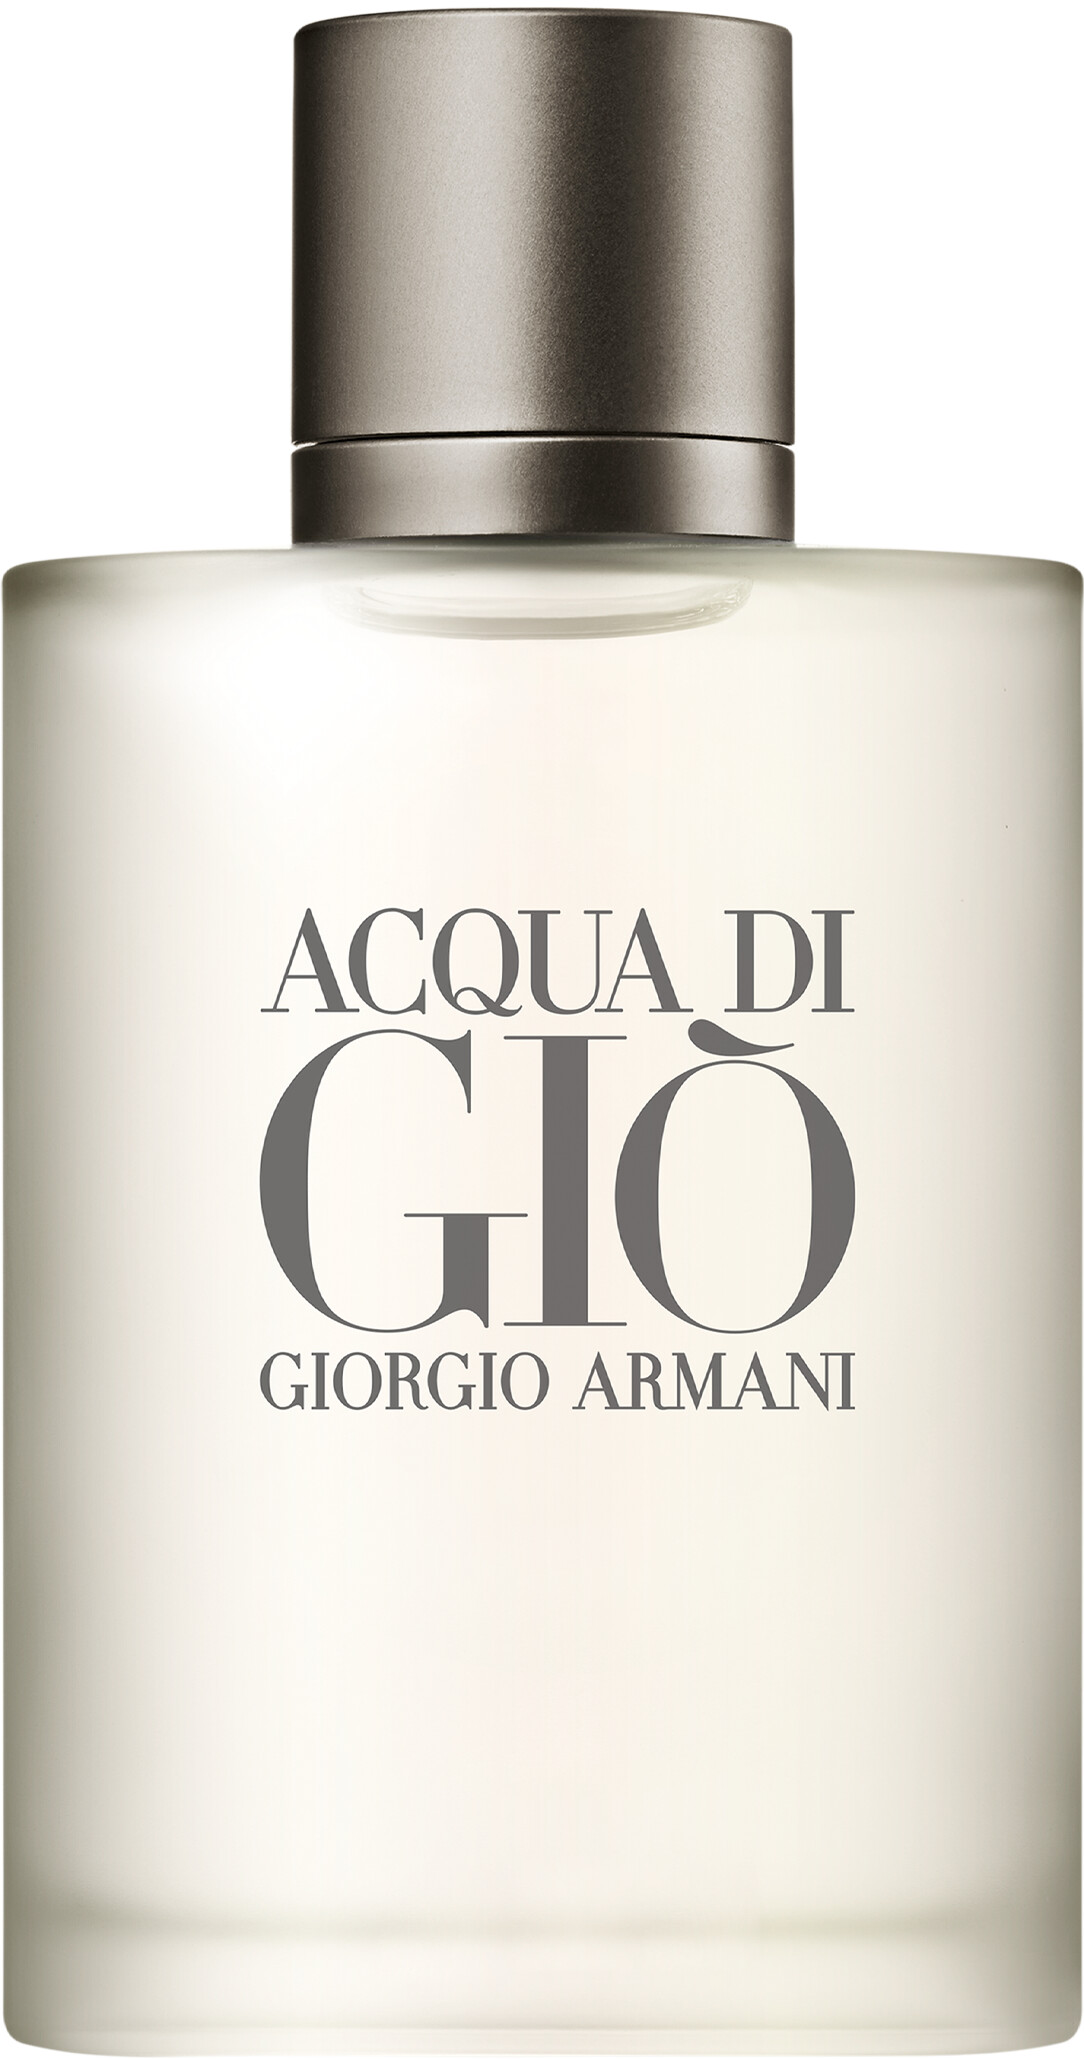 Giorgio Armani Acqua di Gio Pour Homme Eau de Toilette Spray 100ml